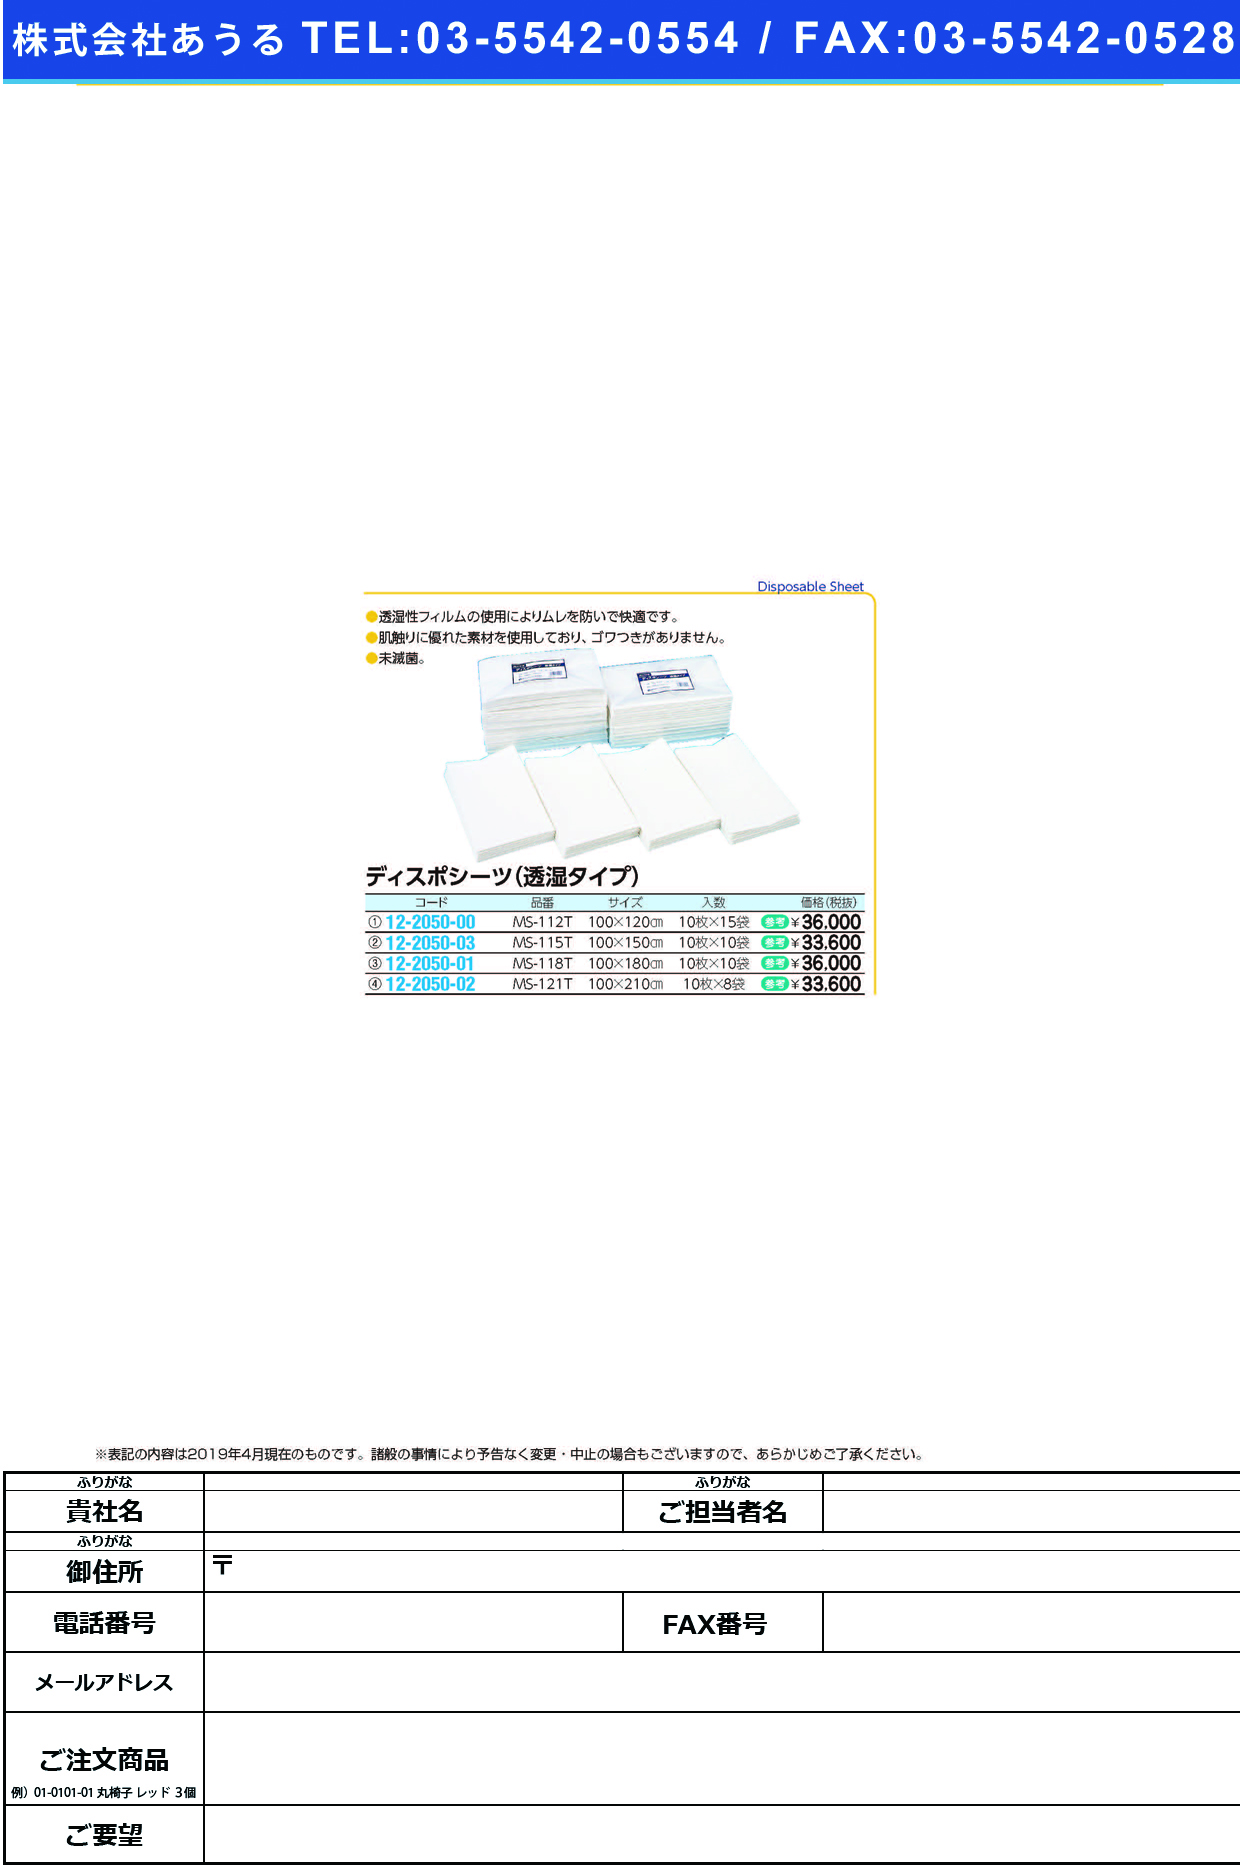 (12-2050-01)ディスポシーツ（透湿タイプ）未滅菌 MS-118T(10ﾏｲX10ﾌｸﾛ) ﾃﾞｨｽﾎﾟｼｰﾂﾄｳｼﾂﾀｲﾌﾟ【1梱単位】【2019年カタログ商品】